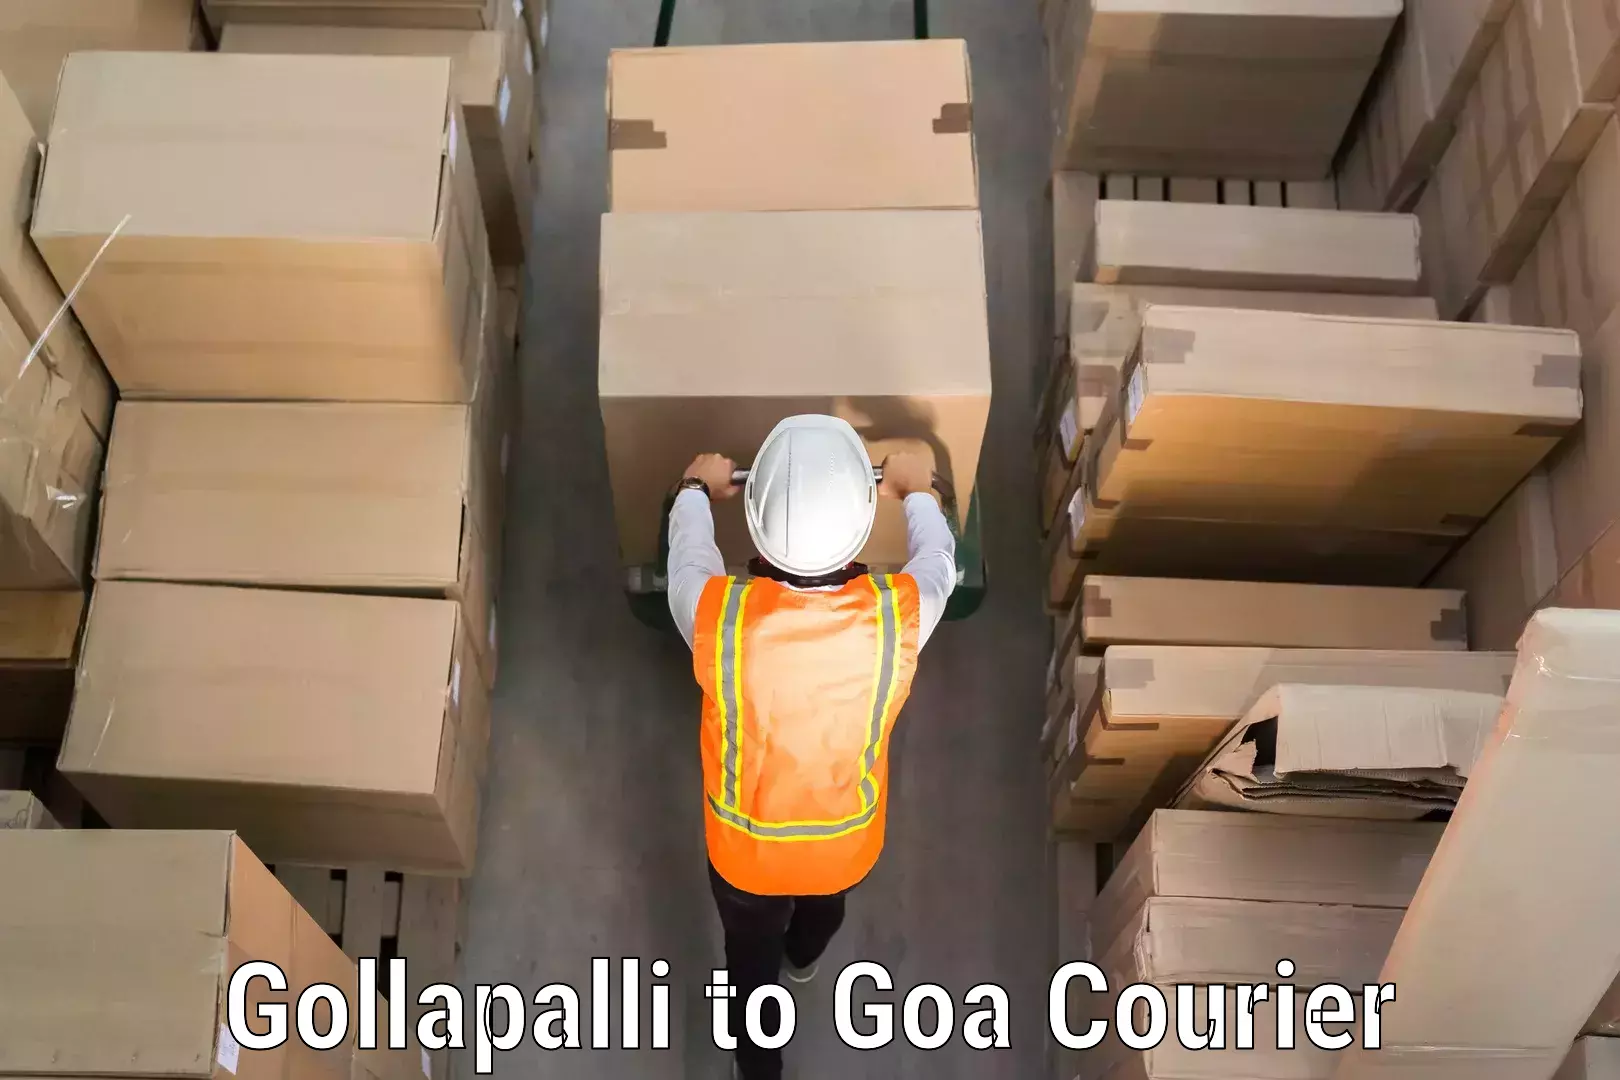 Global baggage shipping Gollapalli to Panaji